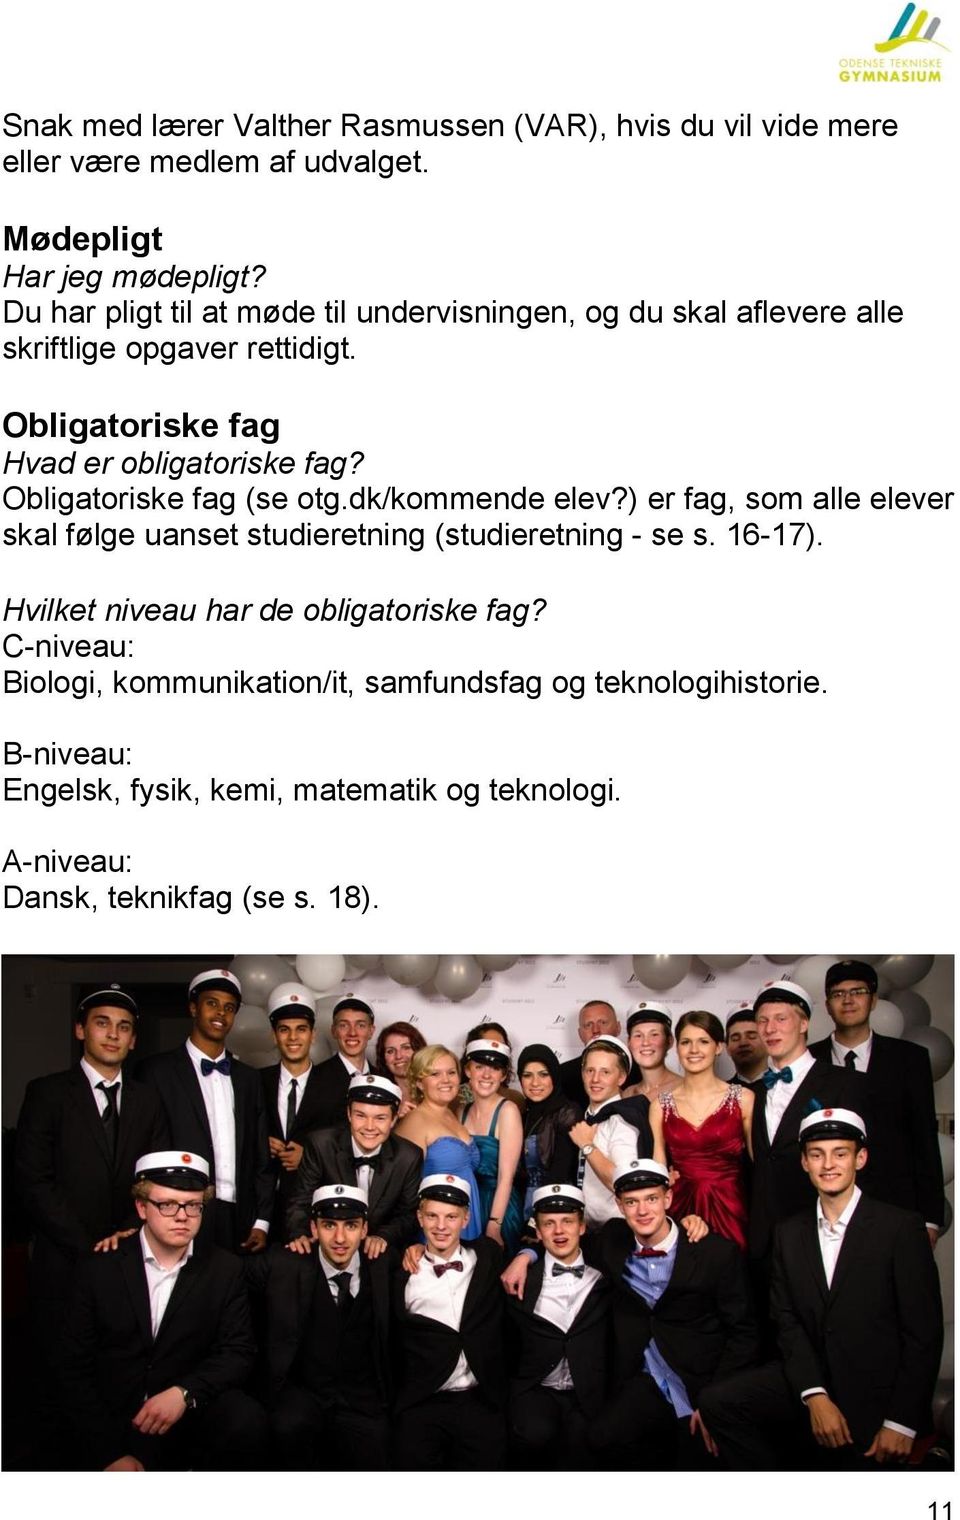 Obligatoriske fag (se otg.dk/kommende elev?) er fag, som alle elever skal følge uanset studieretning (studieretning - se s. 16-17).